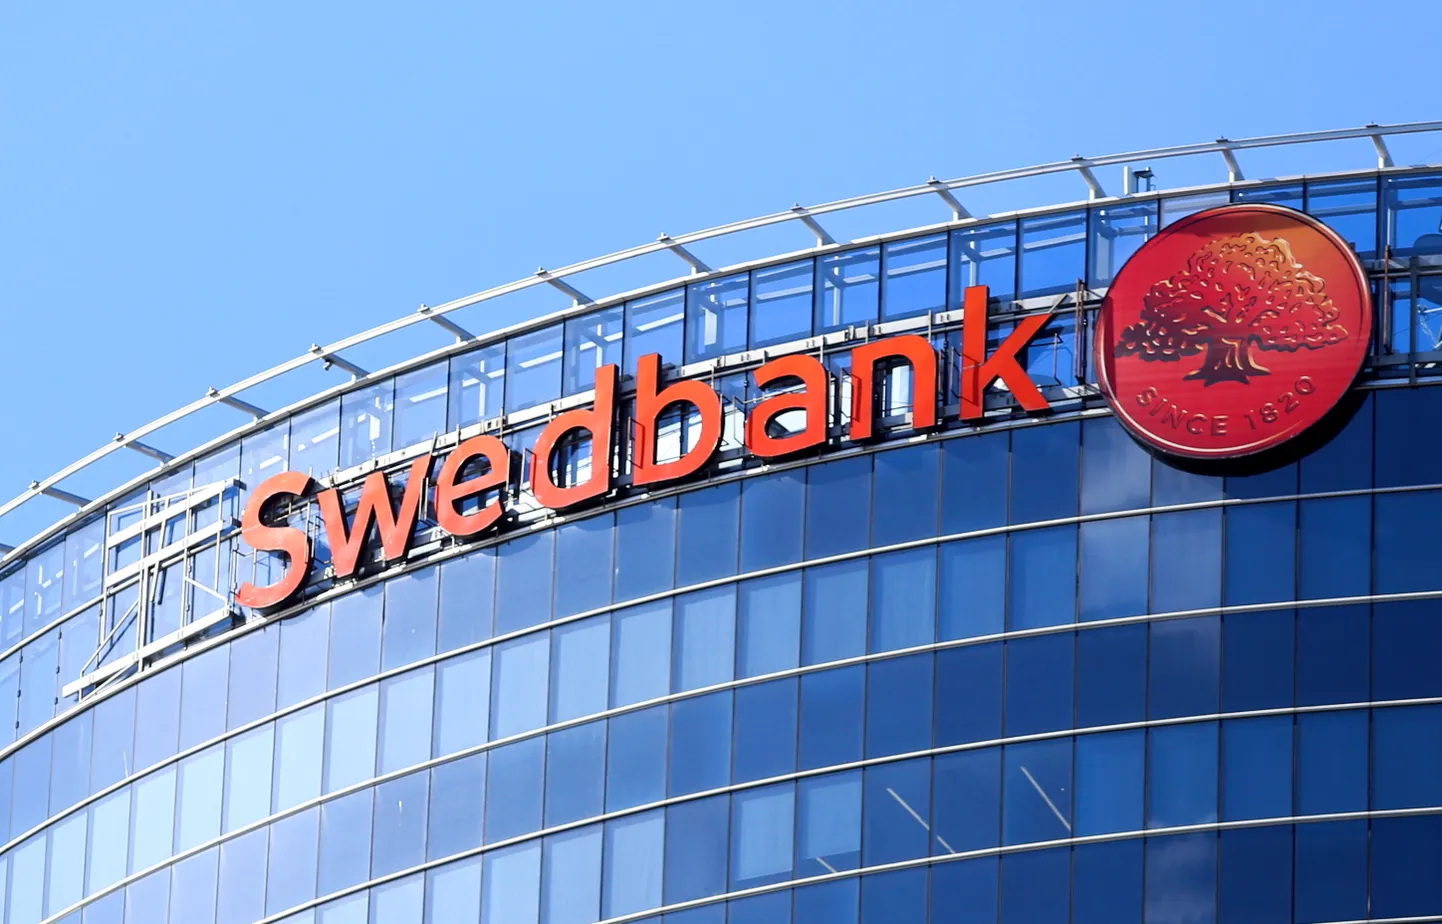 "Swedbank" administratīvā ēka.